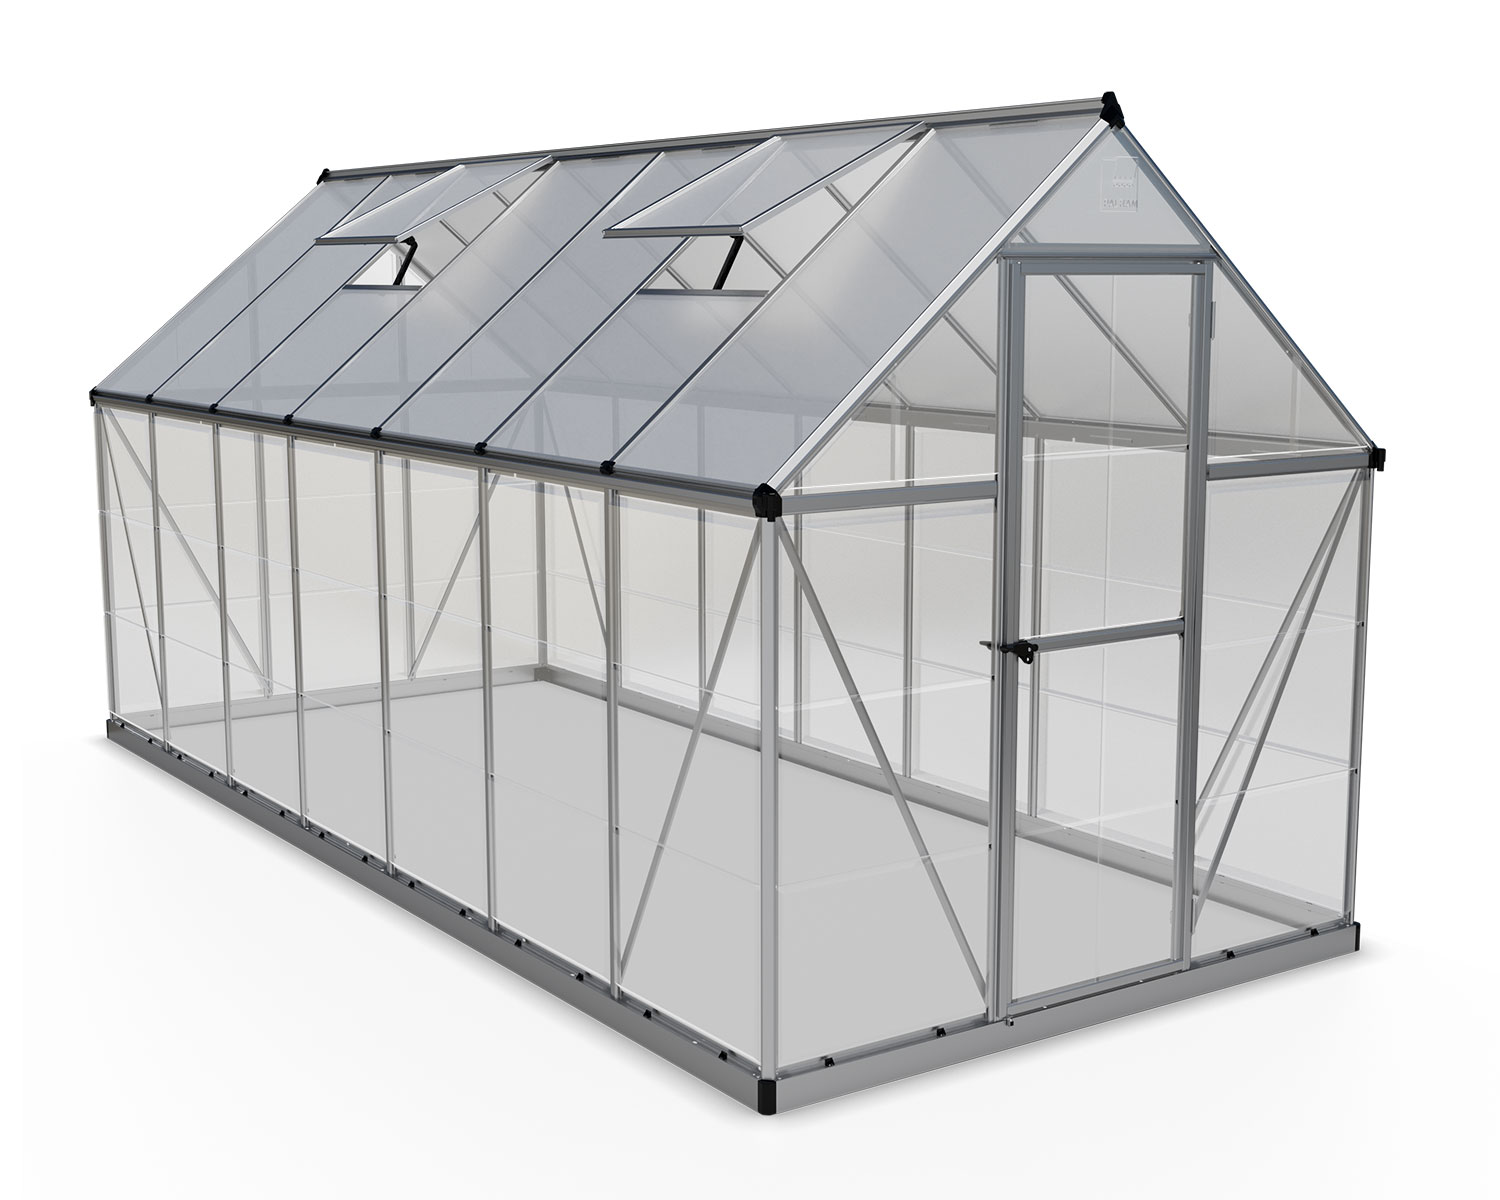 Greenhouse Hybrid 6' x 14' Kit -Silver Structure & Hybrid Glazing